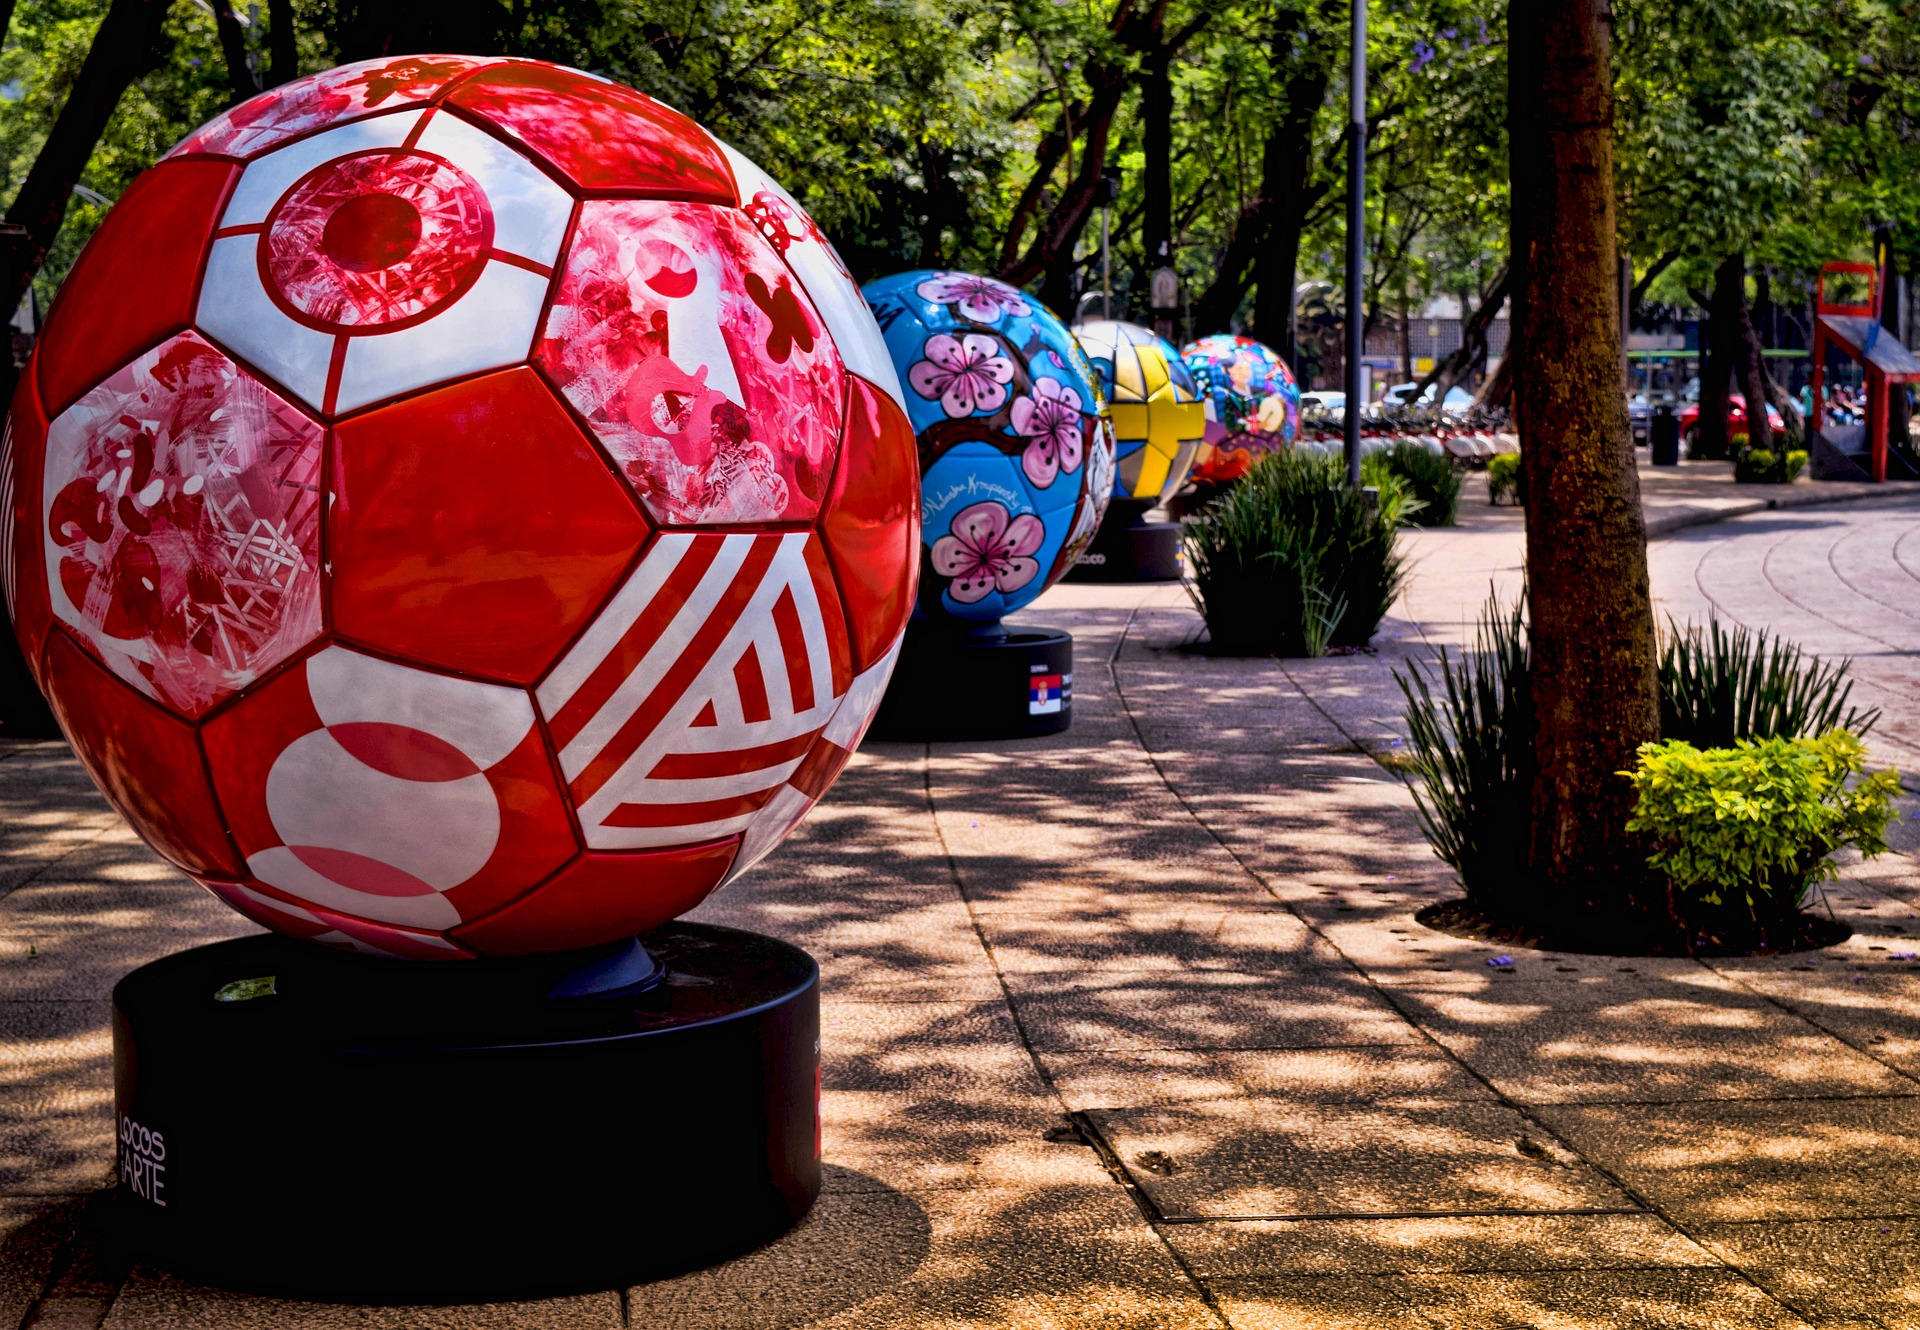 dans un jardin, plusieurs grands ballons sont installés. Ils représentent chacun un pays.